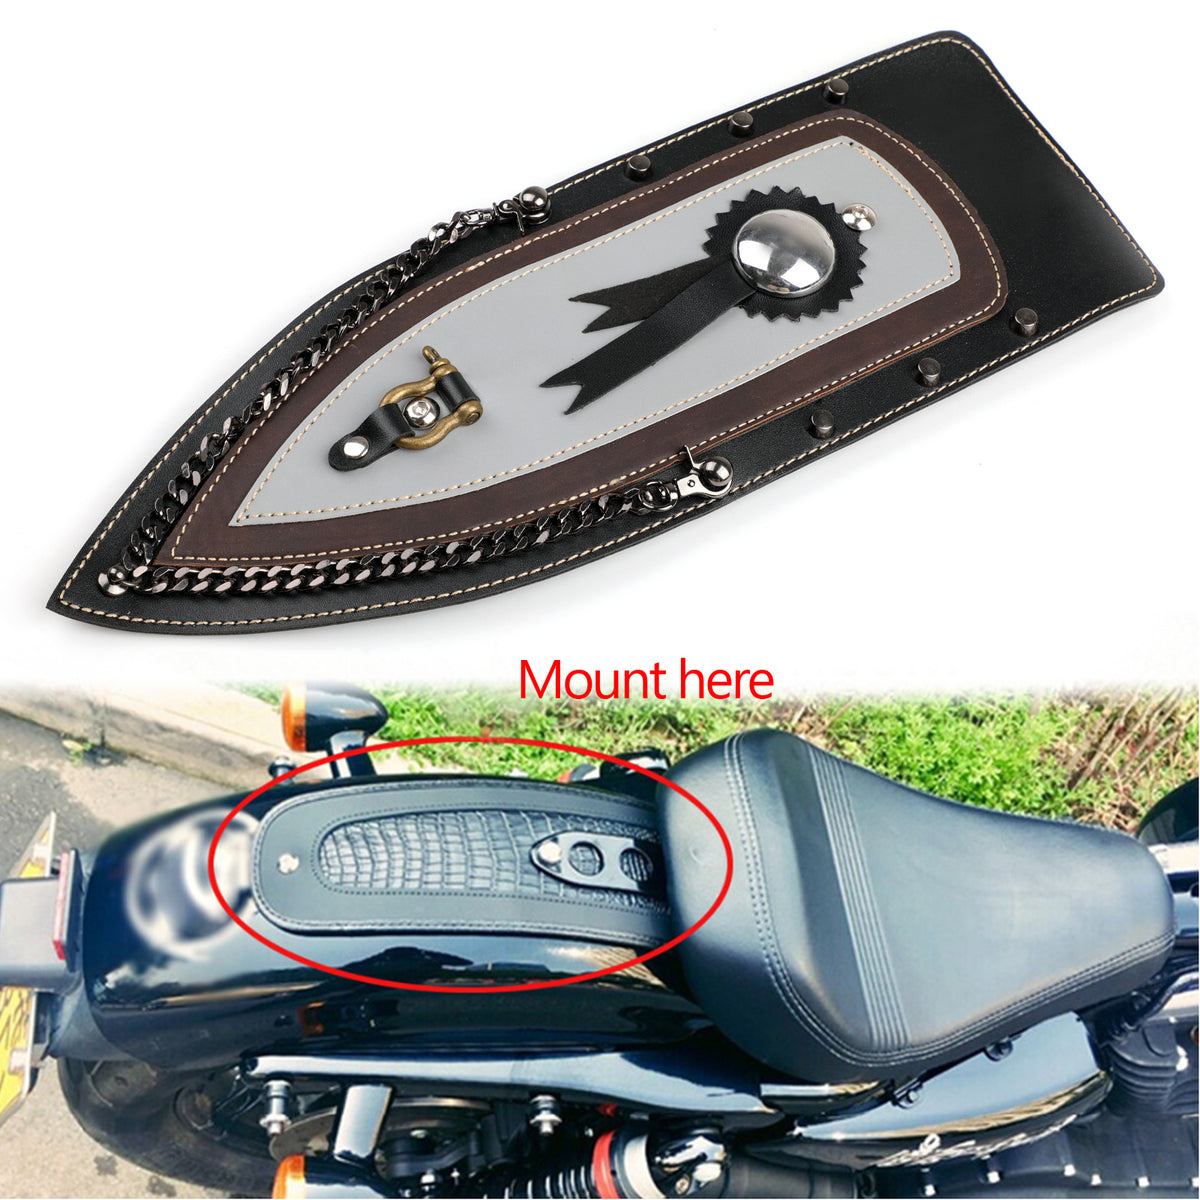 Bavaglino parafango posteriore in pelle liscia per sella singola Harley Sportster Xl883 04-16 generica